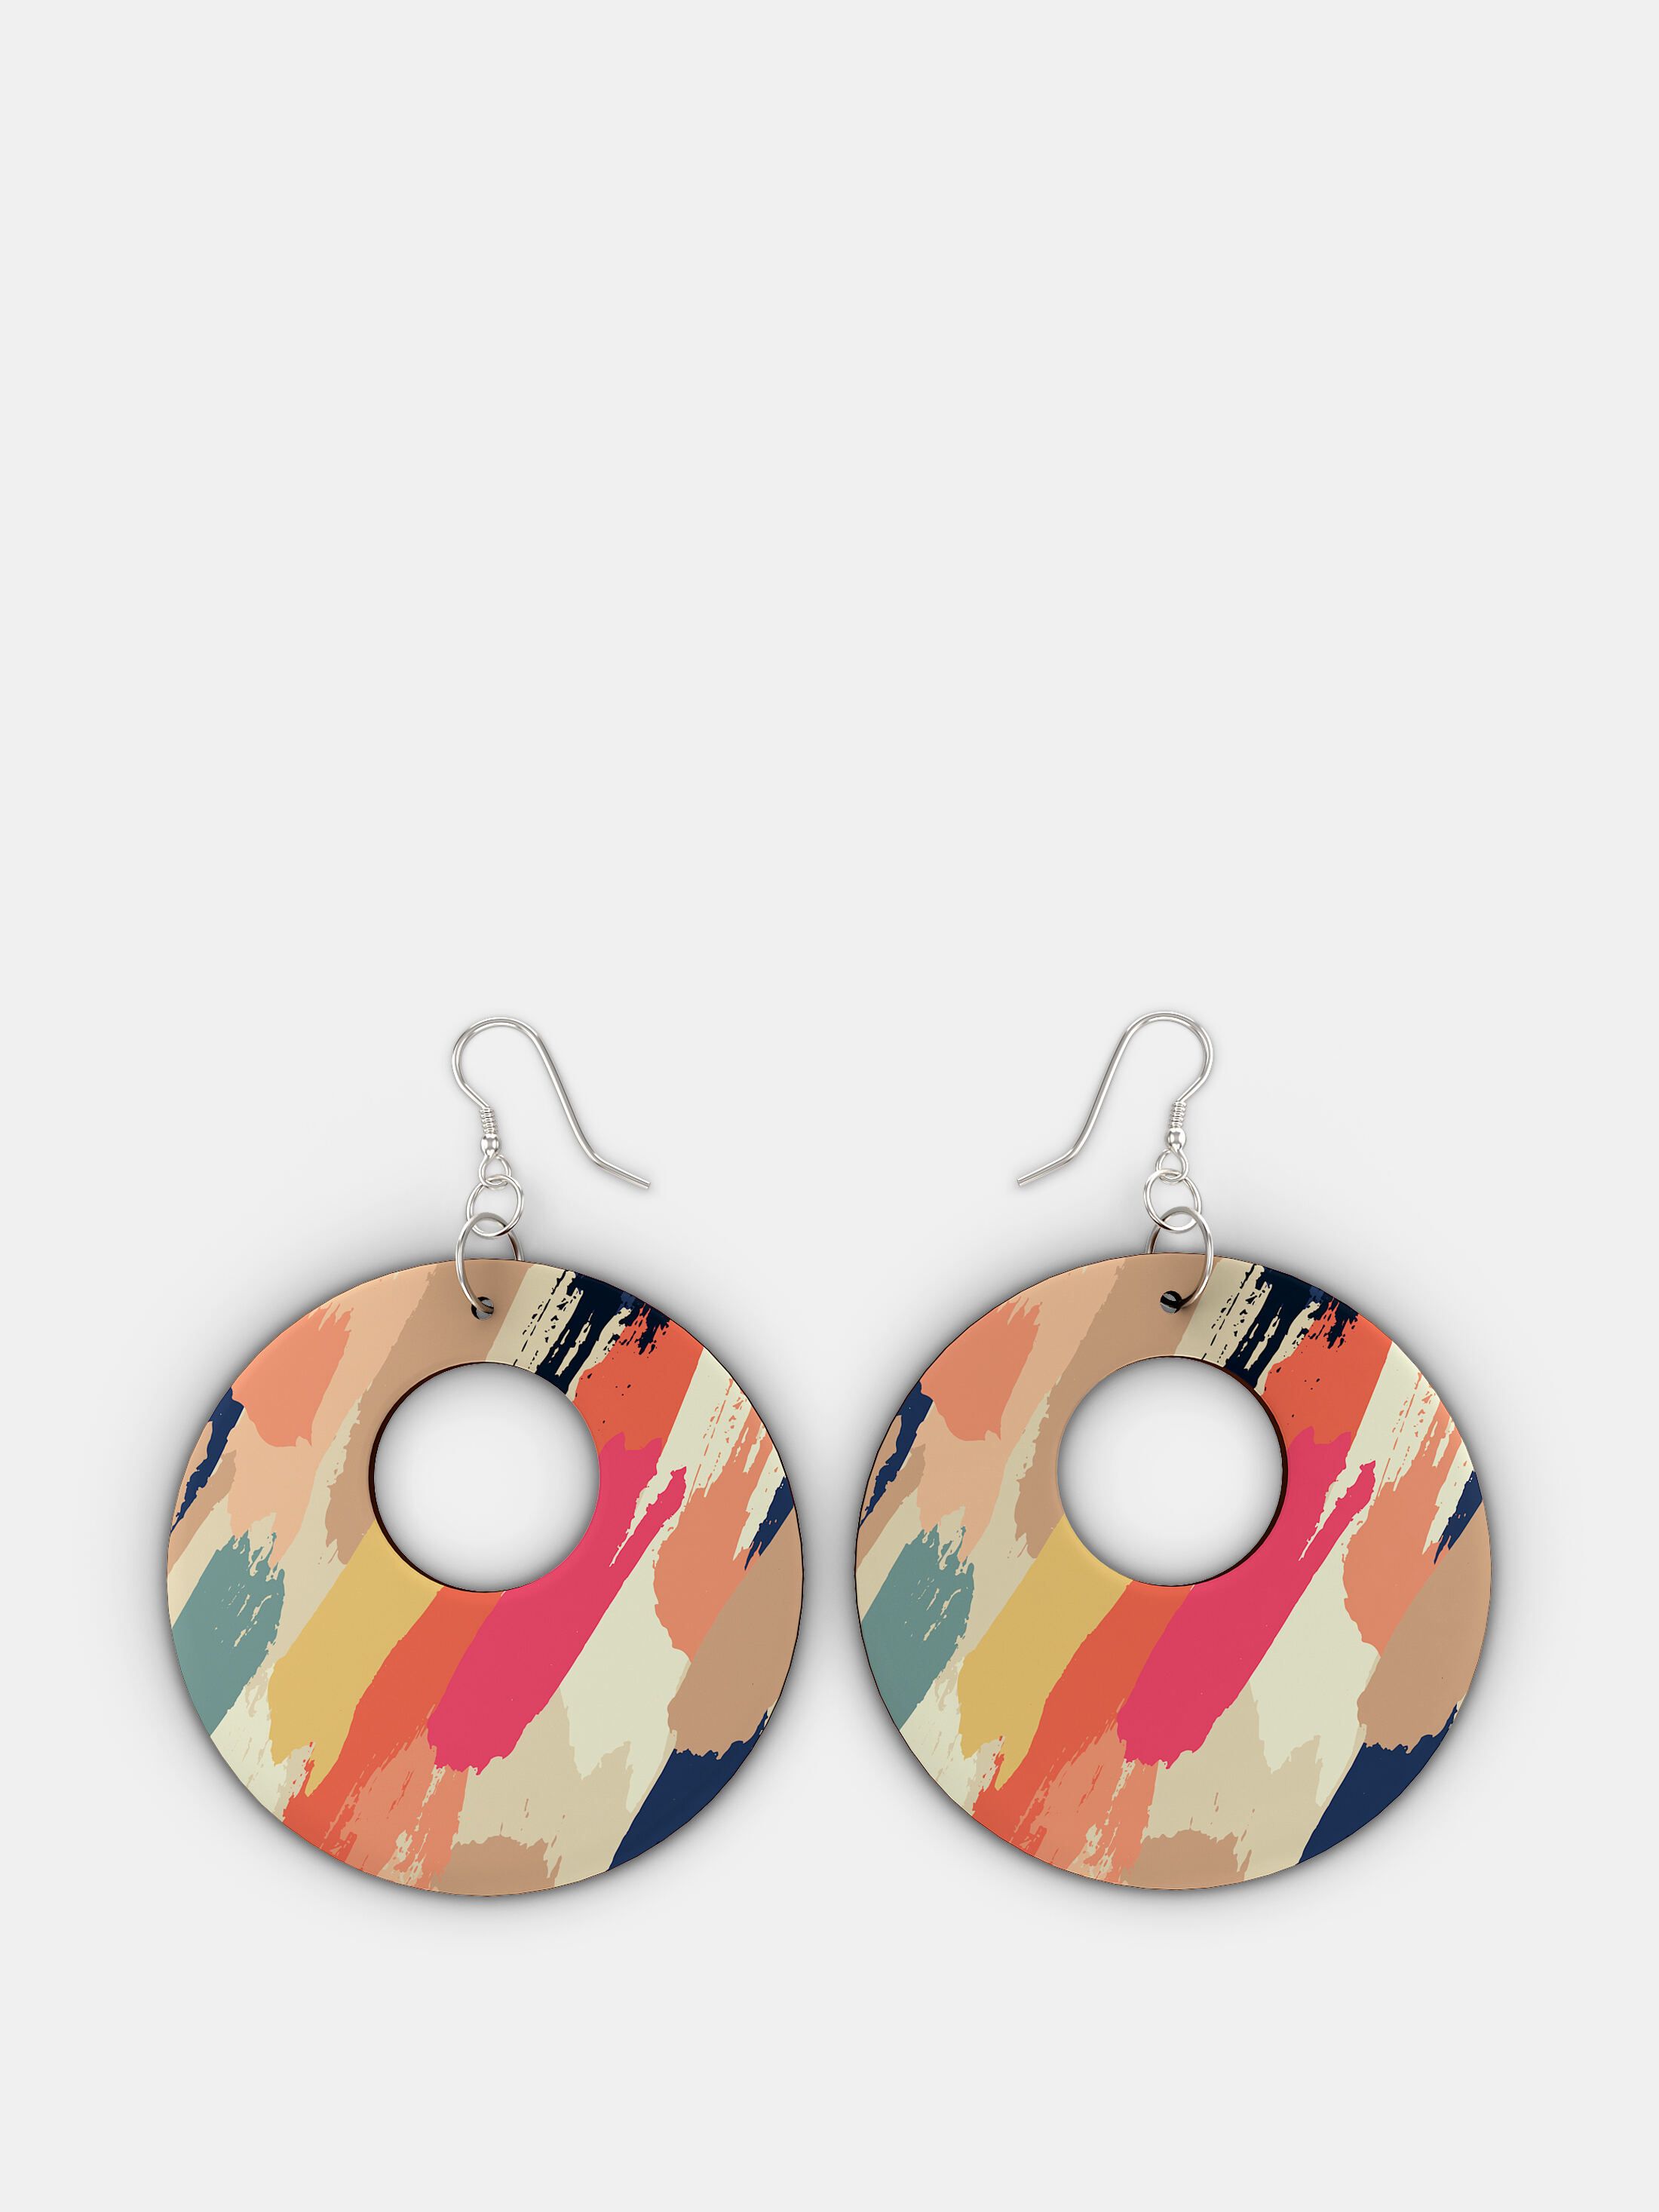 custom printed wooden earrings